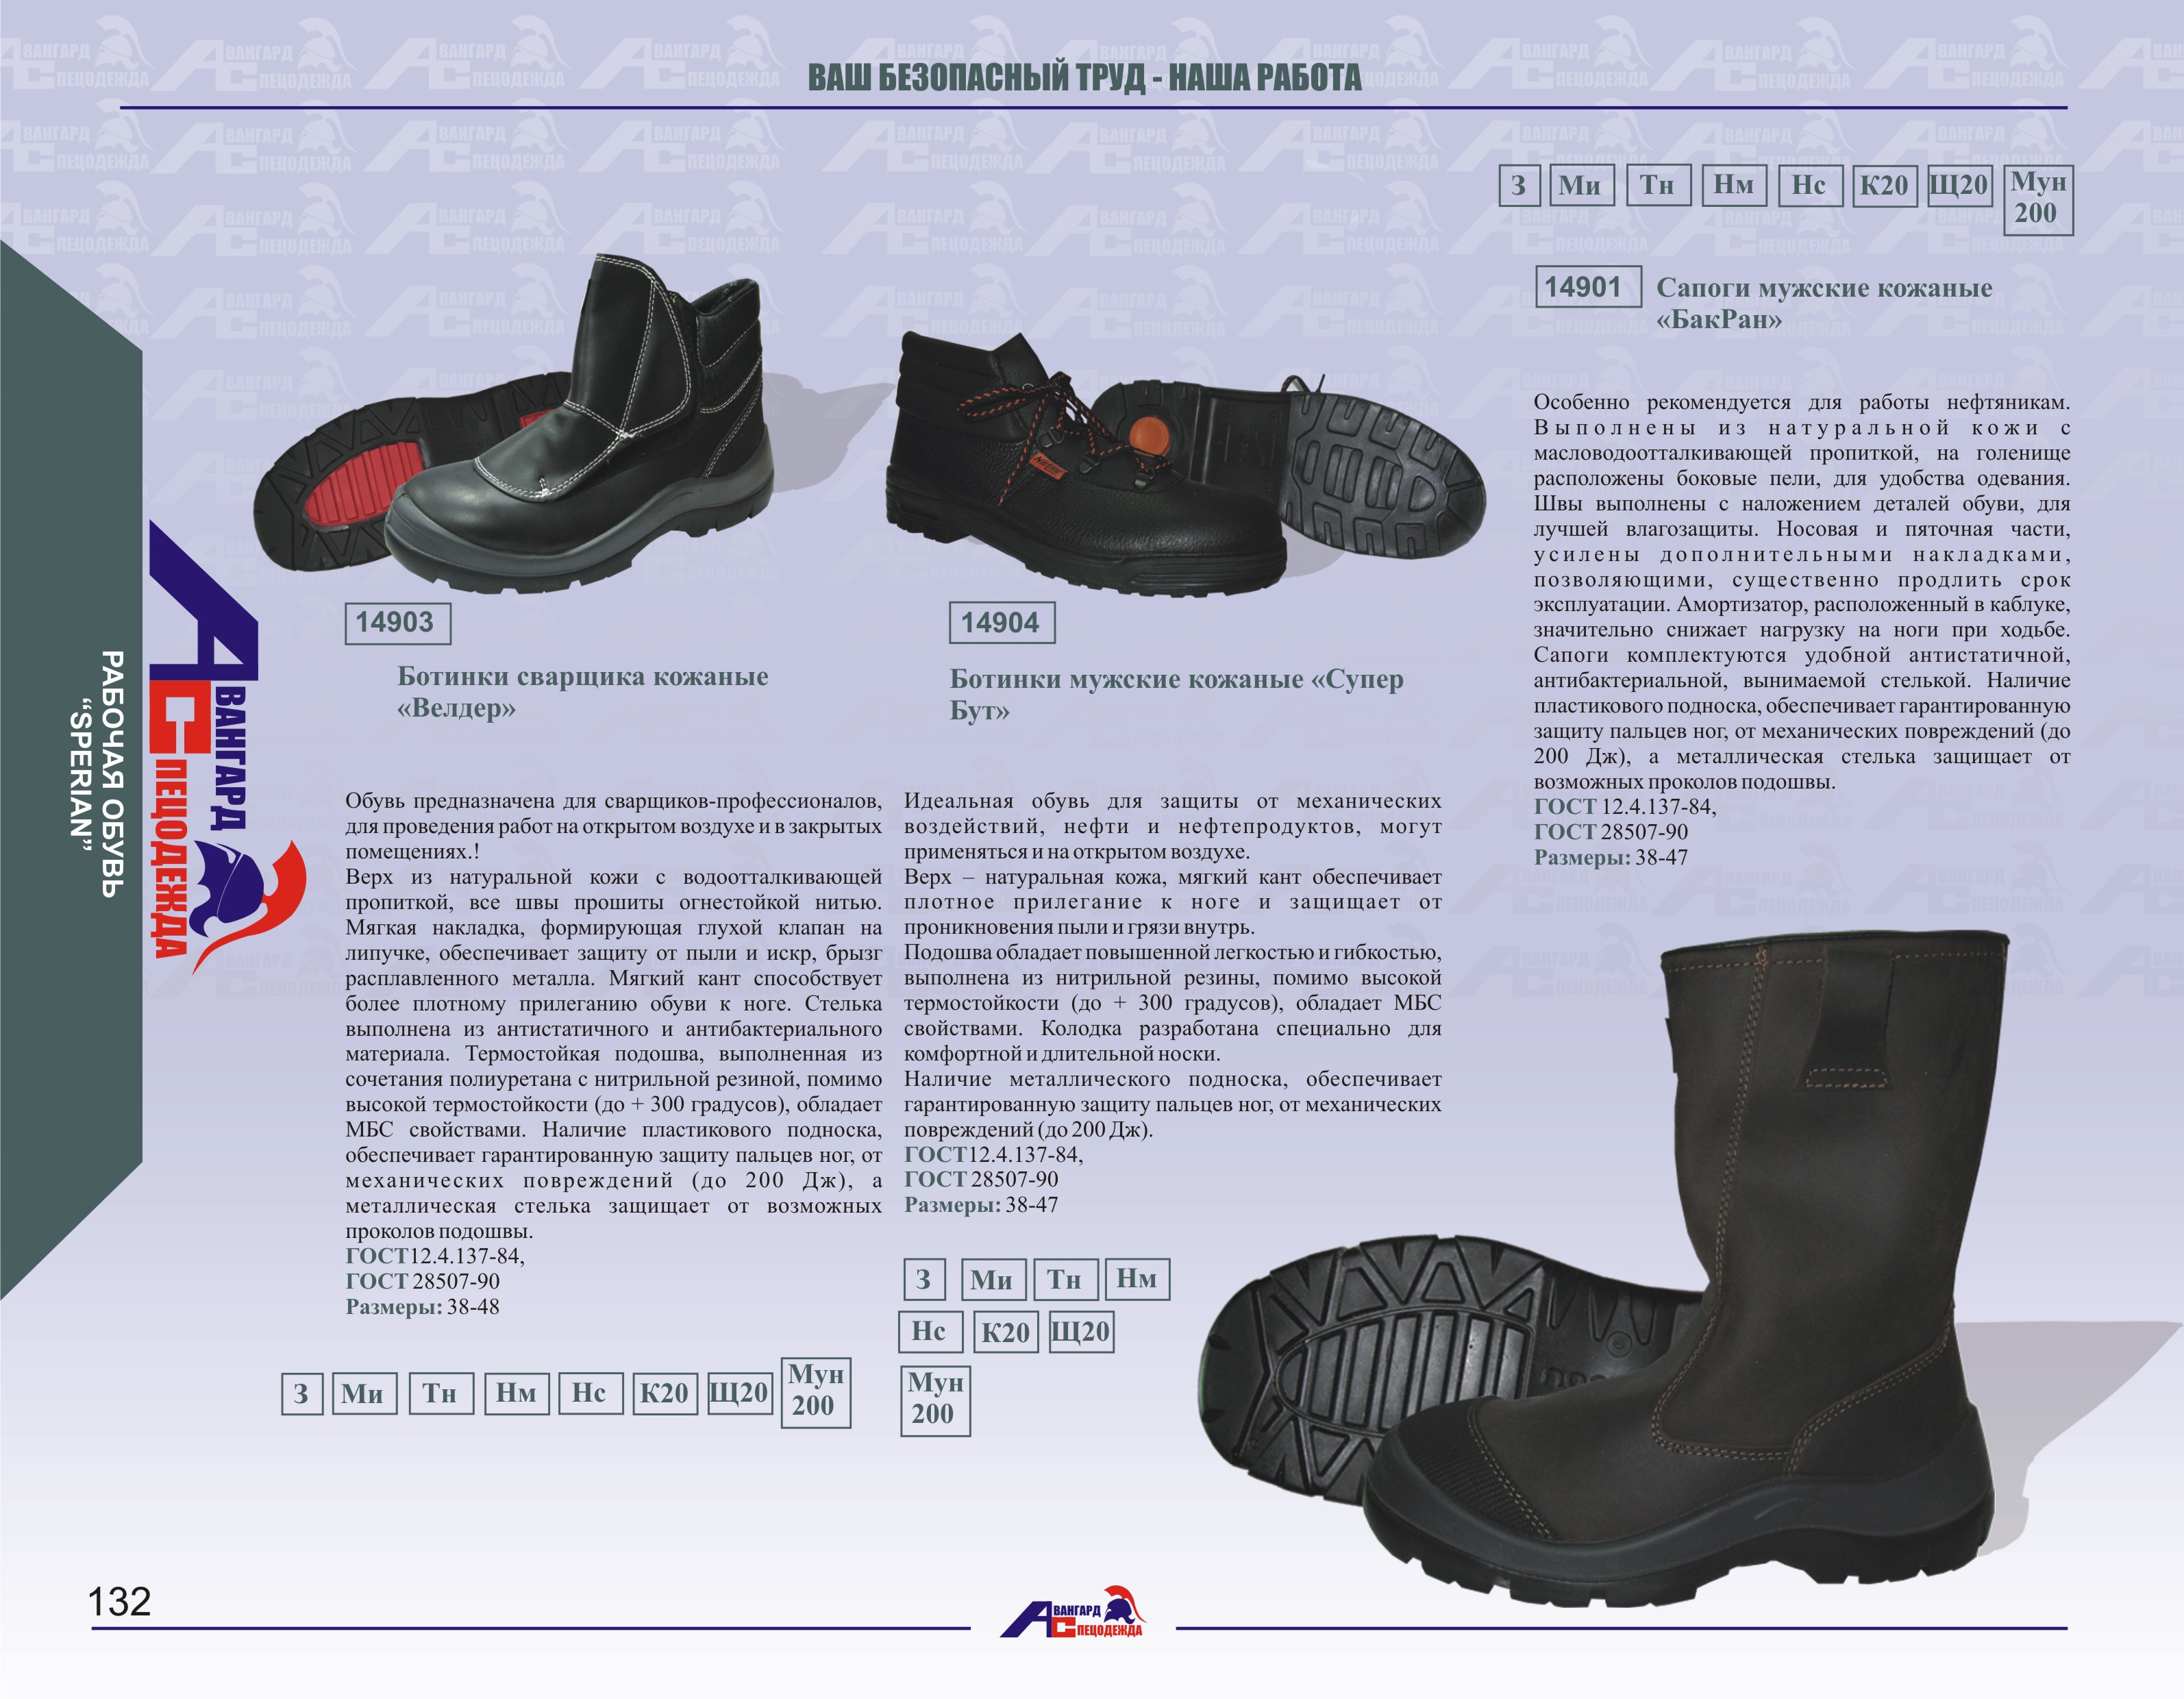 Гост подошвы. Сапоги резиновые специальные для пожарных. Обувь сварщика ГОСТ. Со 5.034/0. Обувь специальная для защиты от контакта с нагретыми поверхностями.